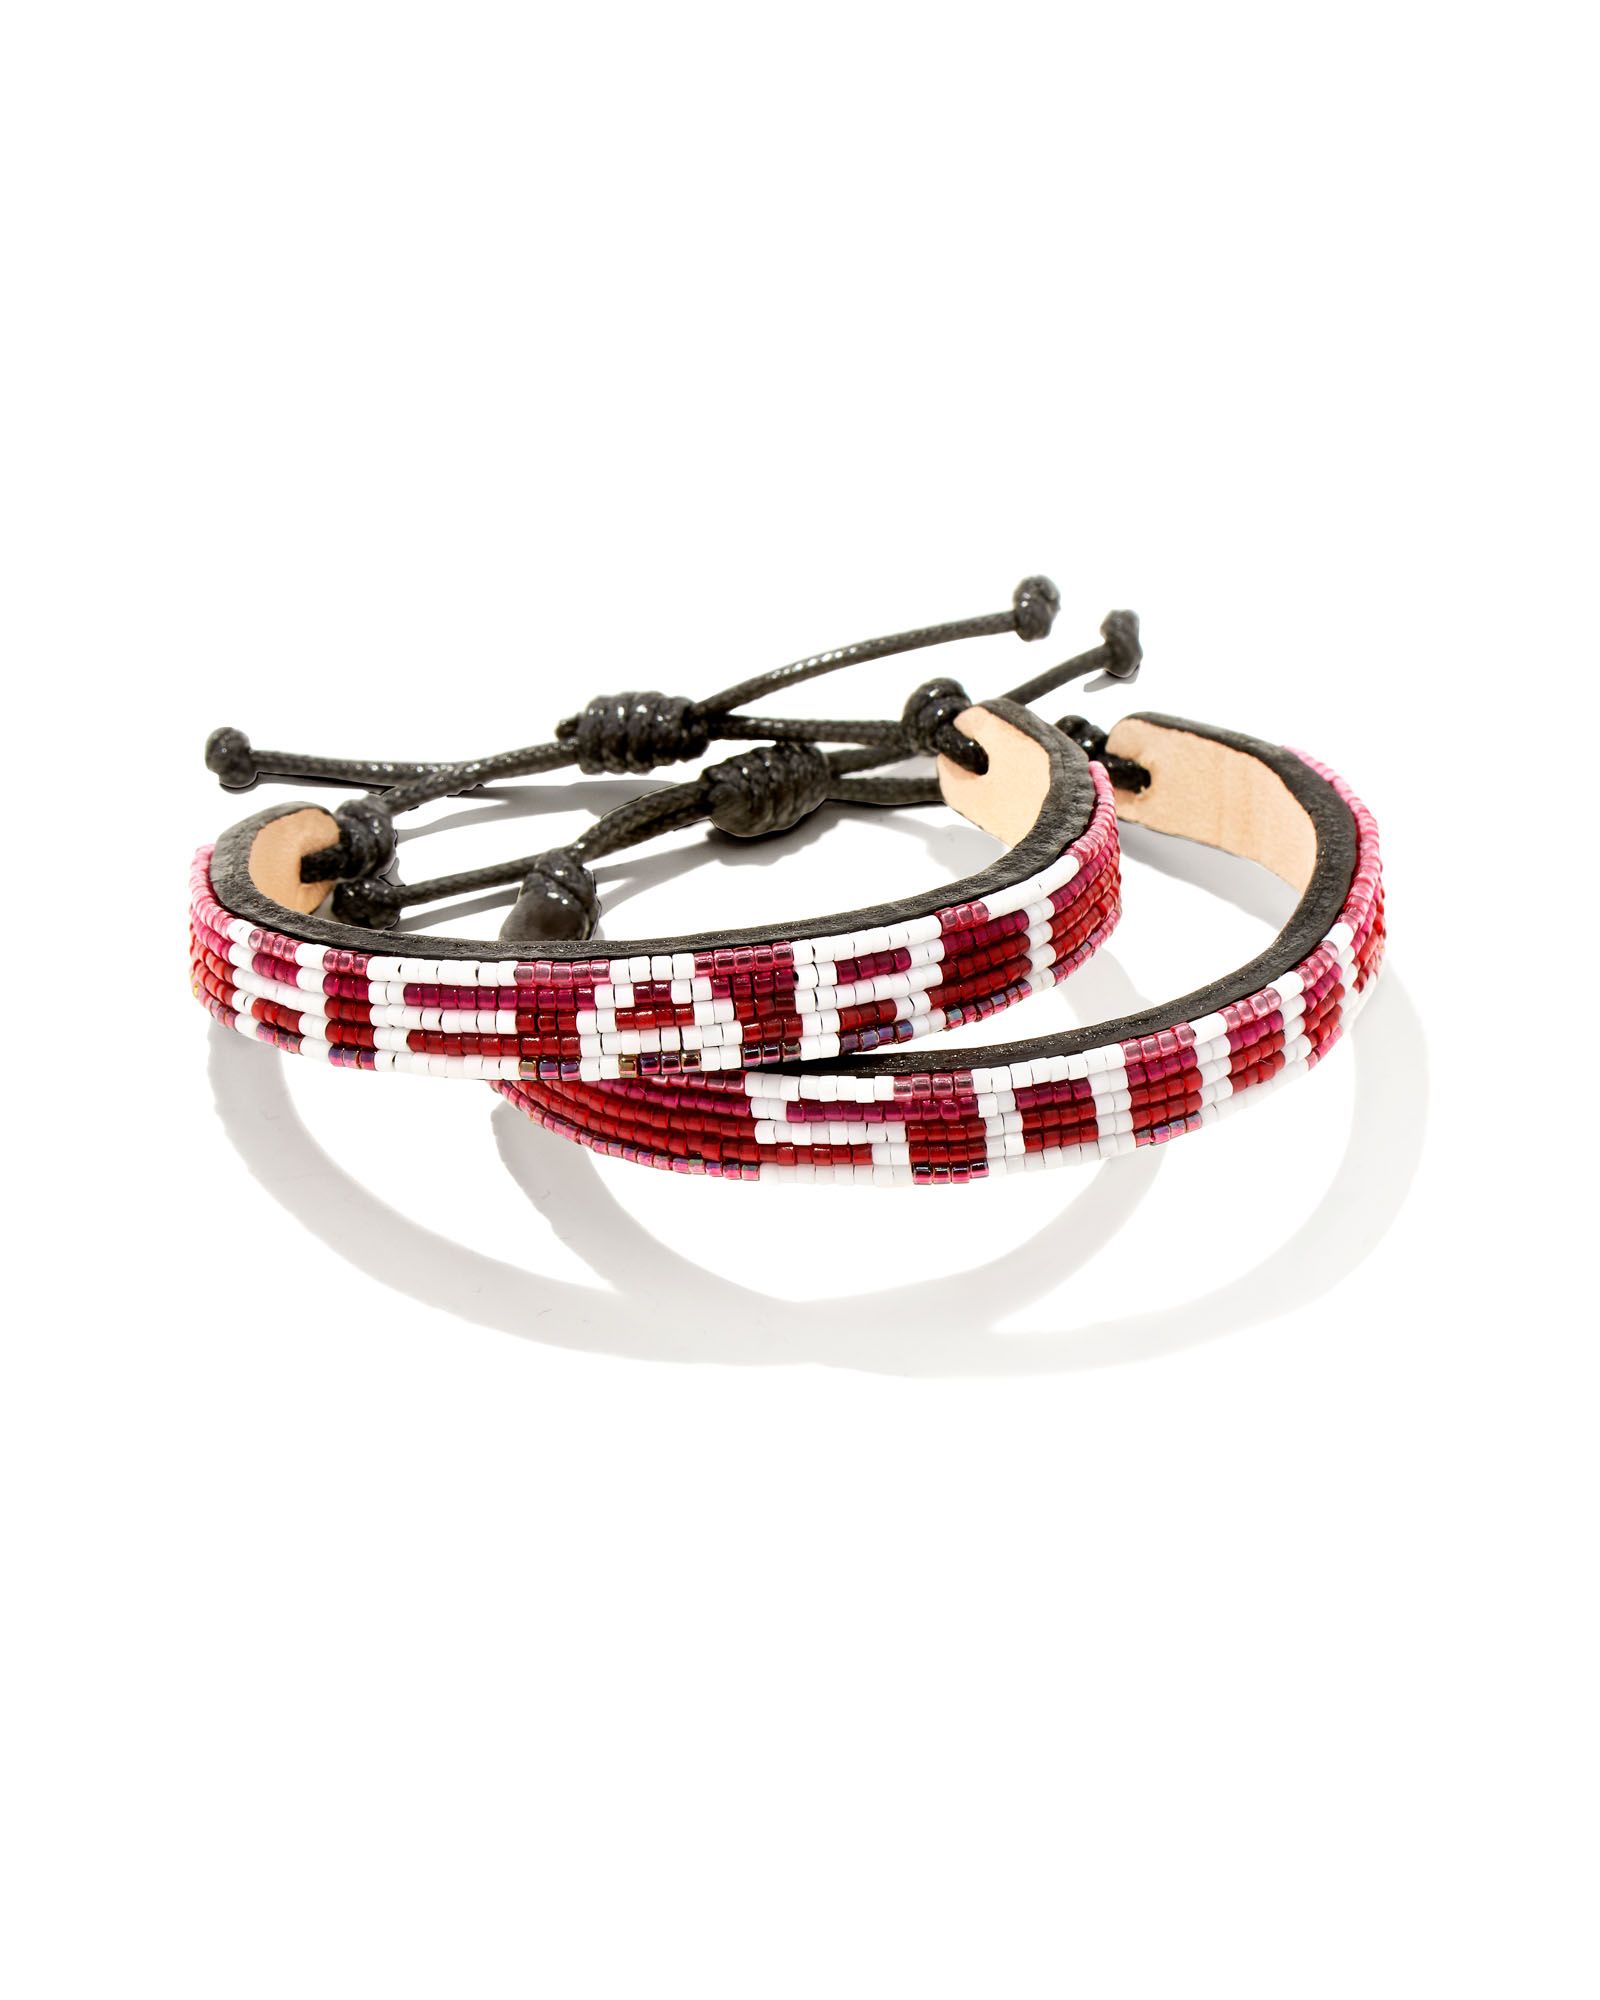 Heart & Soul Beaded Friendship Bracelets Set of 2 in Red Ombre Mix | Kendra Scott | Kendra Scott